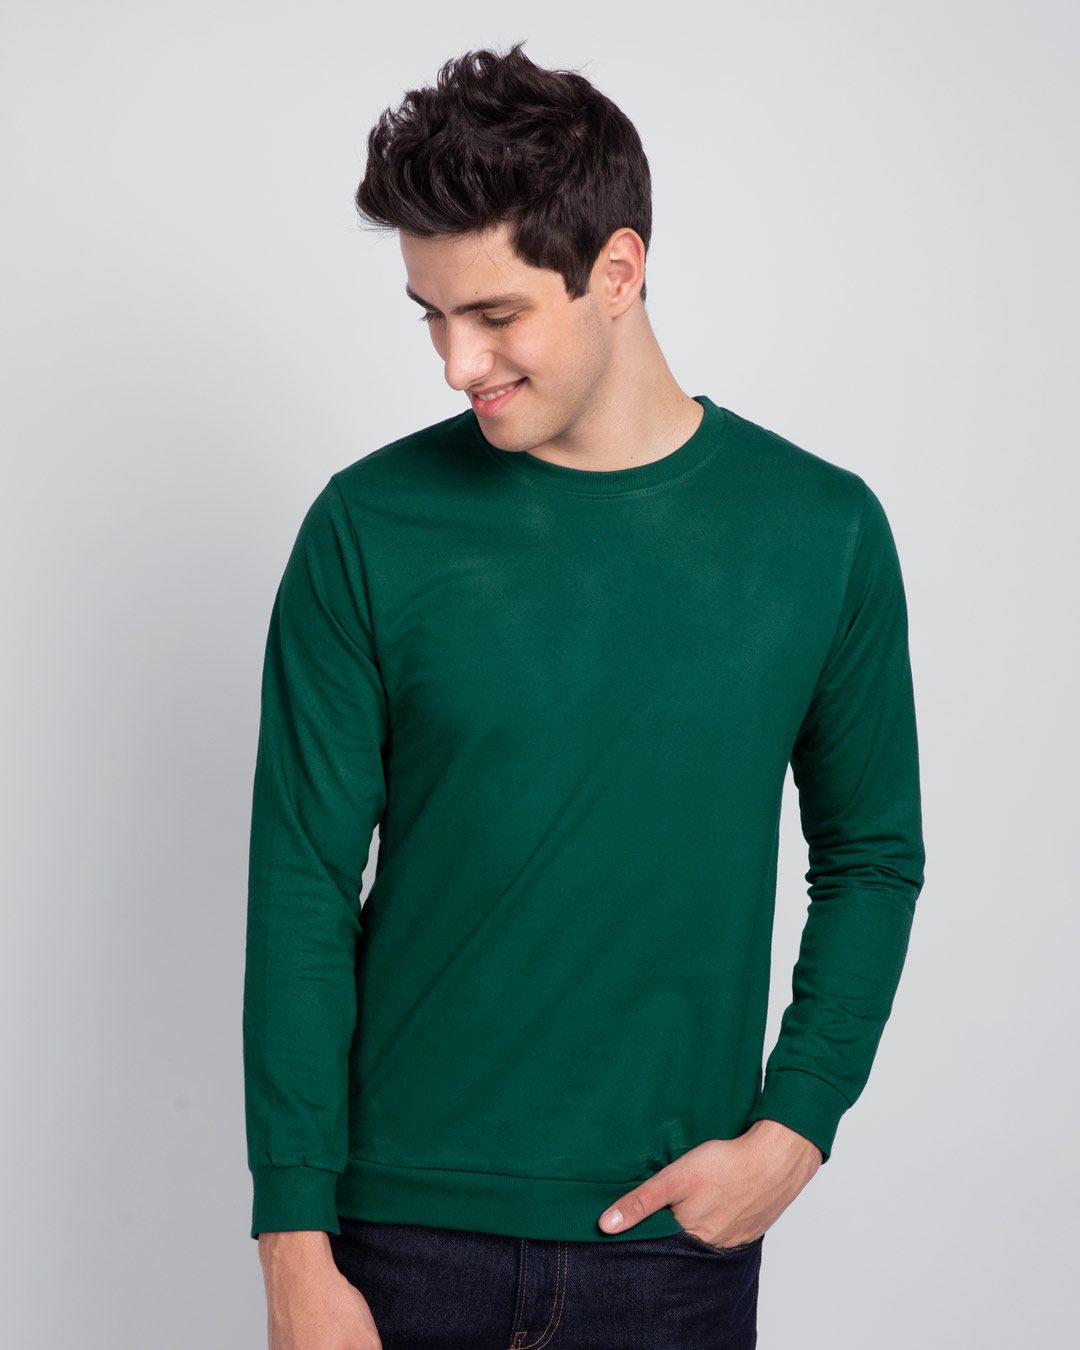 Buy Dark Forest Green Fleece Light Sweatshirt for Men green Online at ...